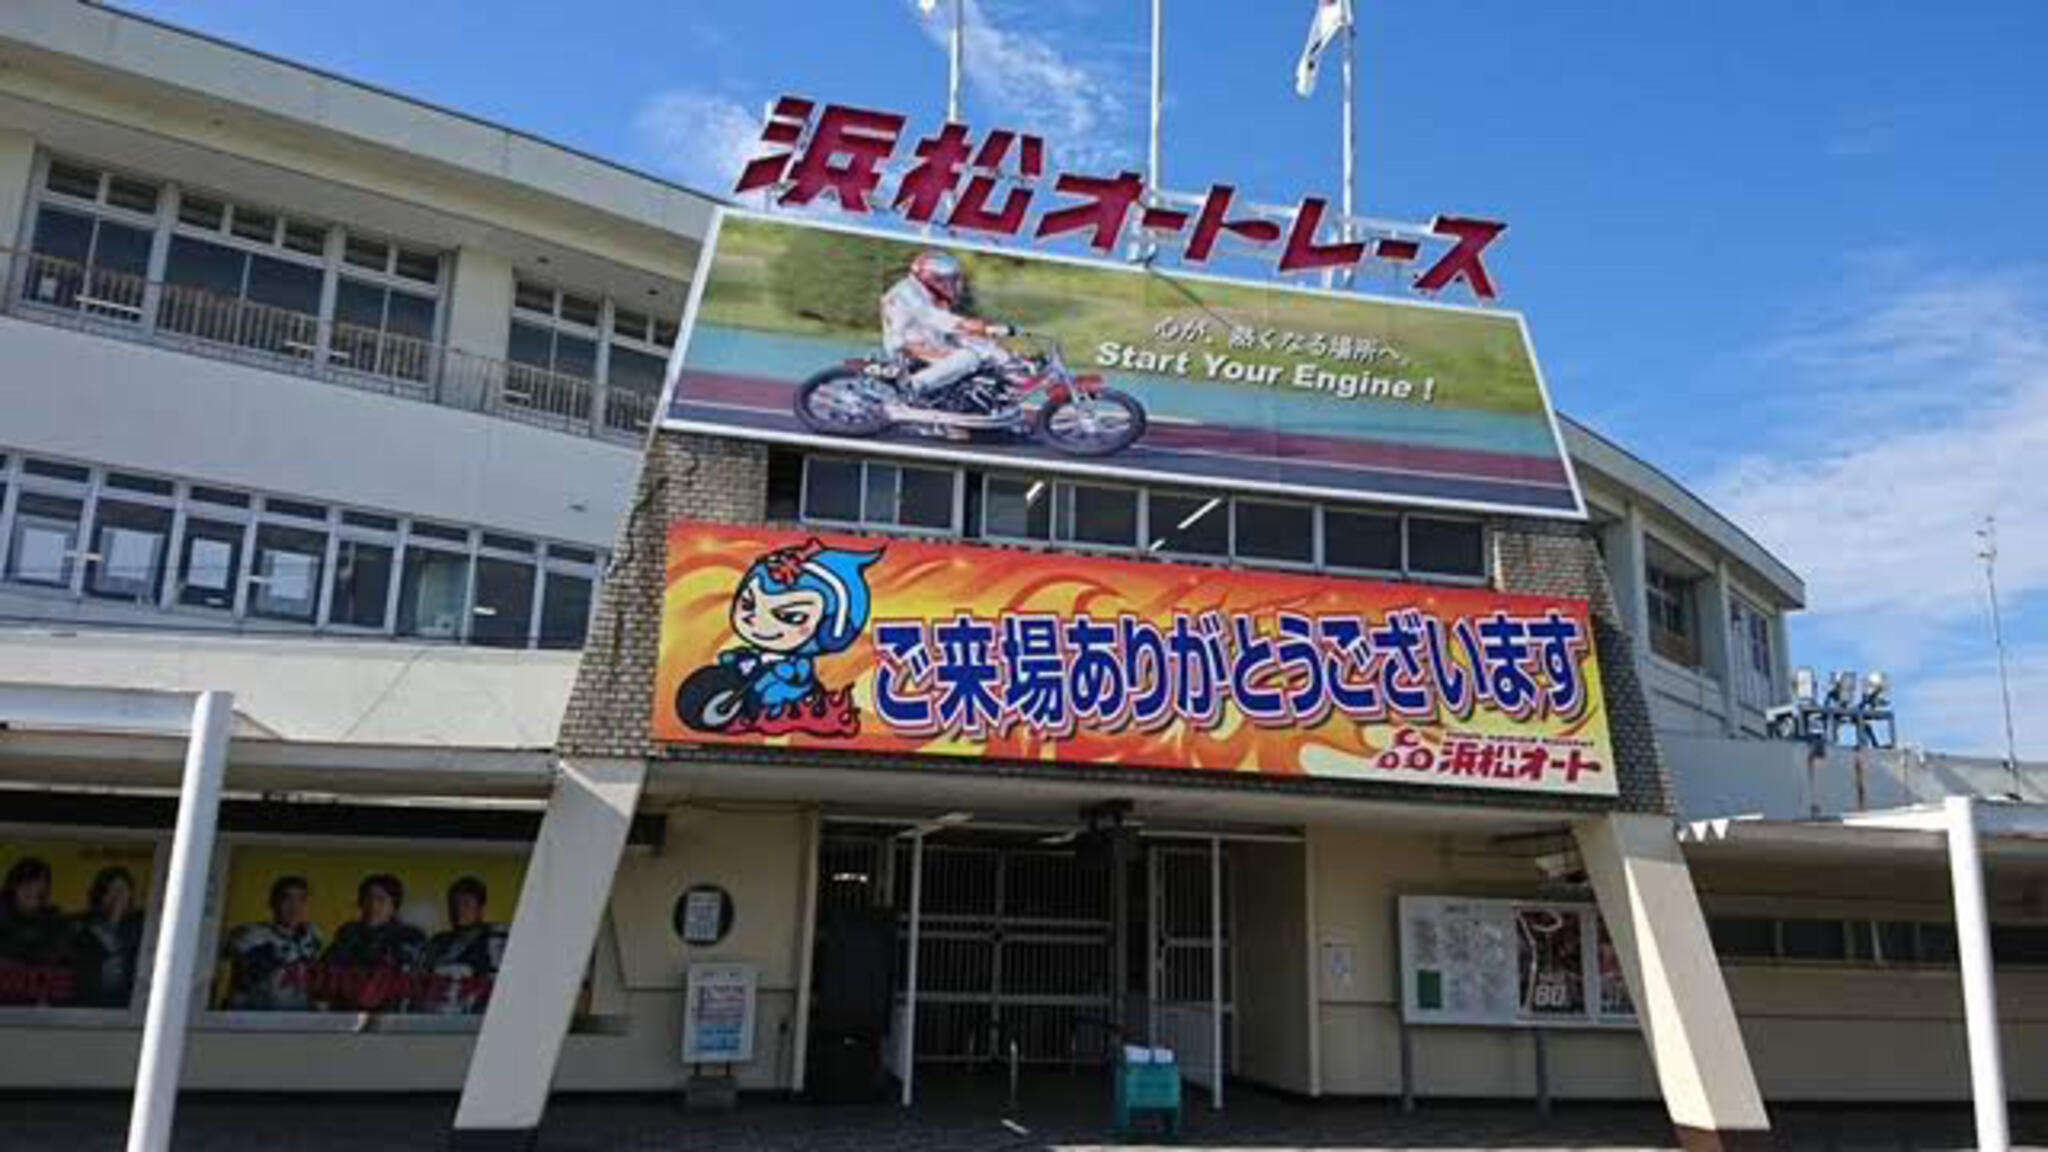 オートレース 浜松オート - 浜松市中央区和合町/オートレース場 